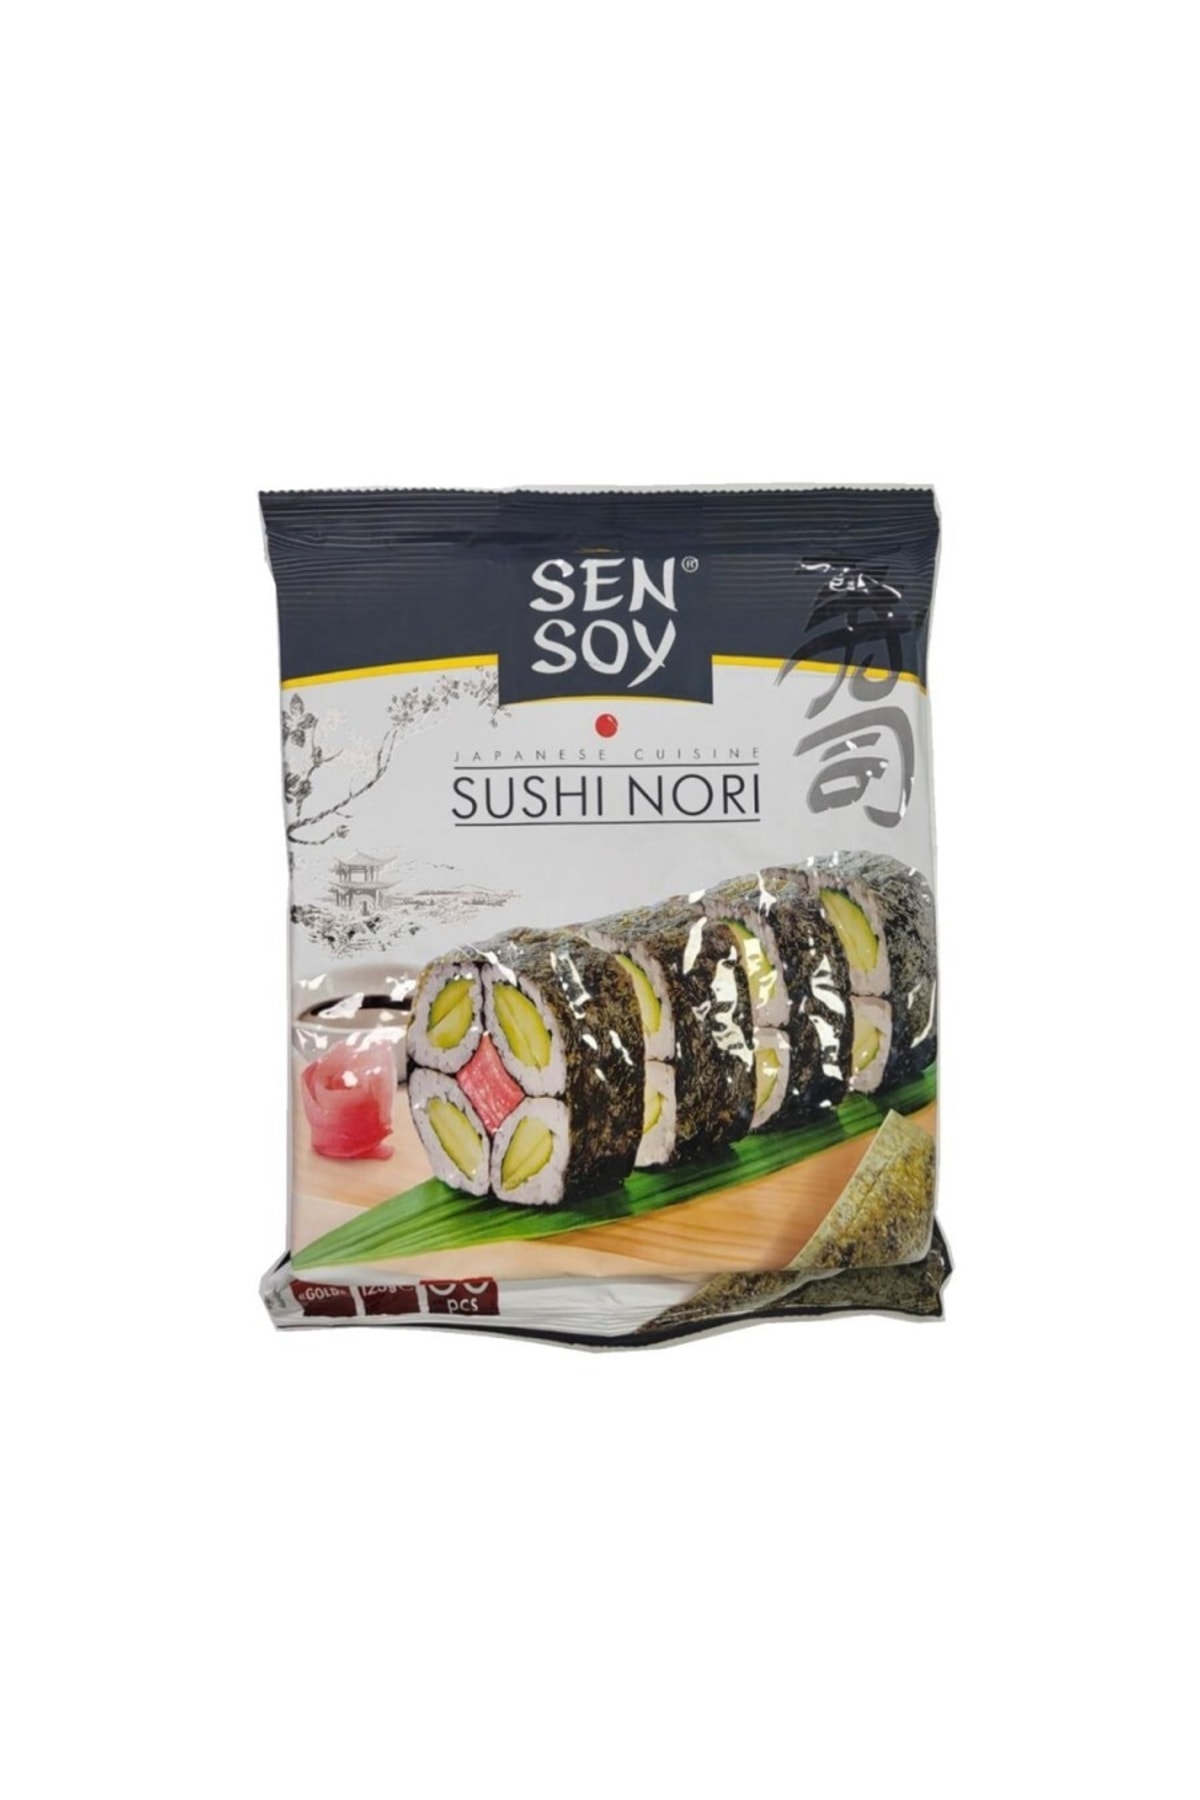 Sensoy Sushi Nori, Deniz Yosunu 50 Yaprak 125 Gr, Sushi Nori 125g 50pcs  resmi